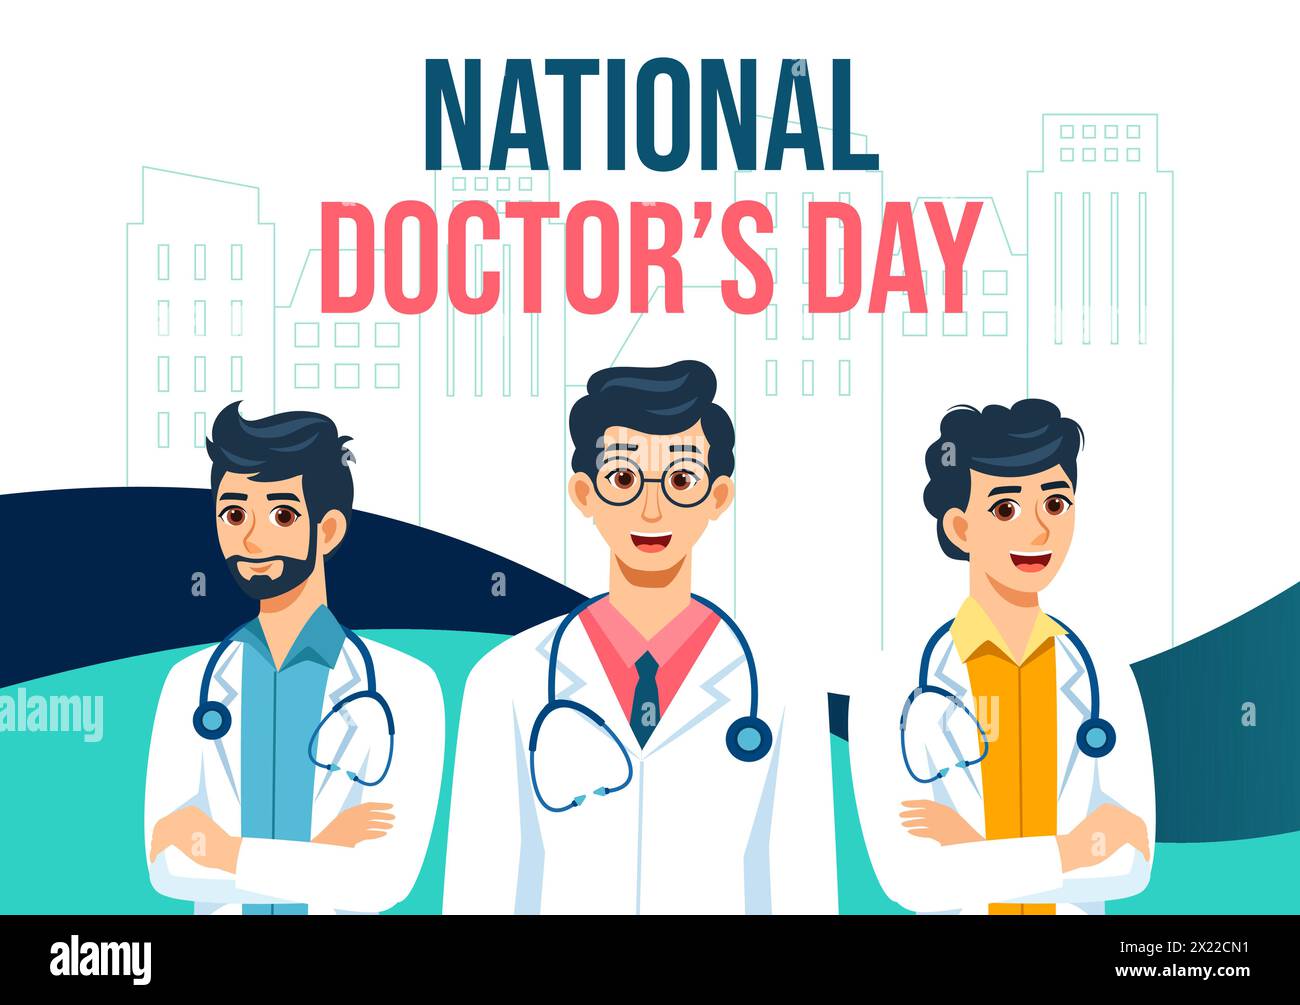 Doctors Day fond de médias sociaux Flat Cartoon illustration de modèles dessinés à la main Illustration de Vecteur